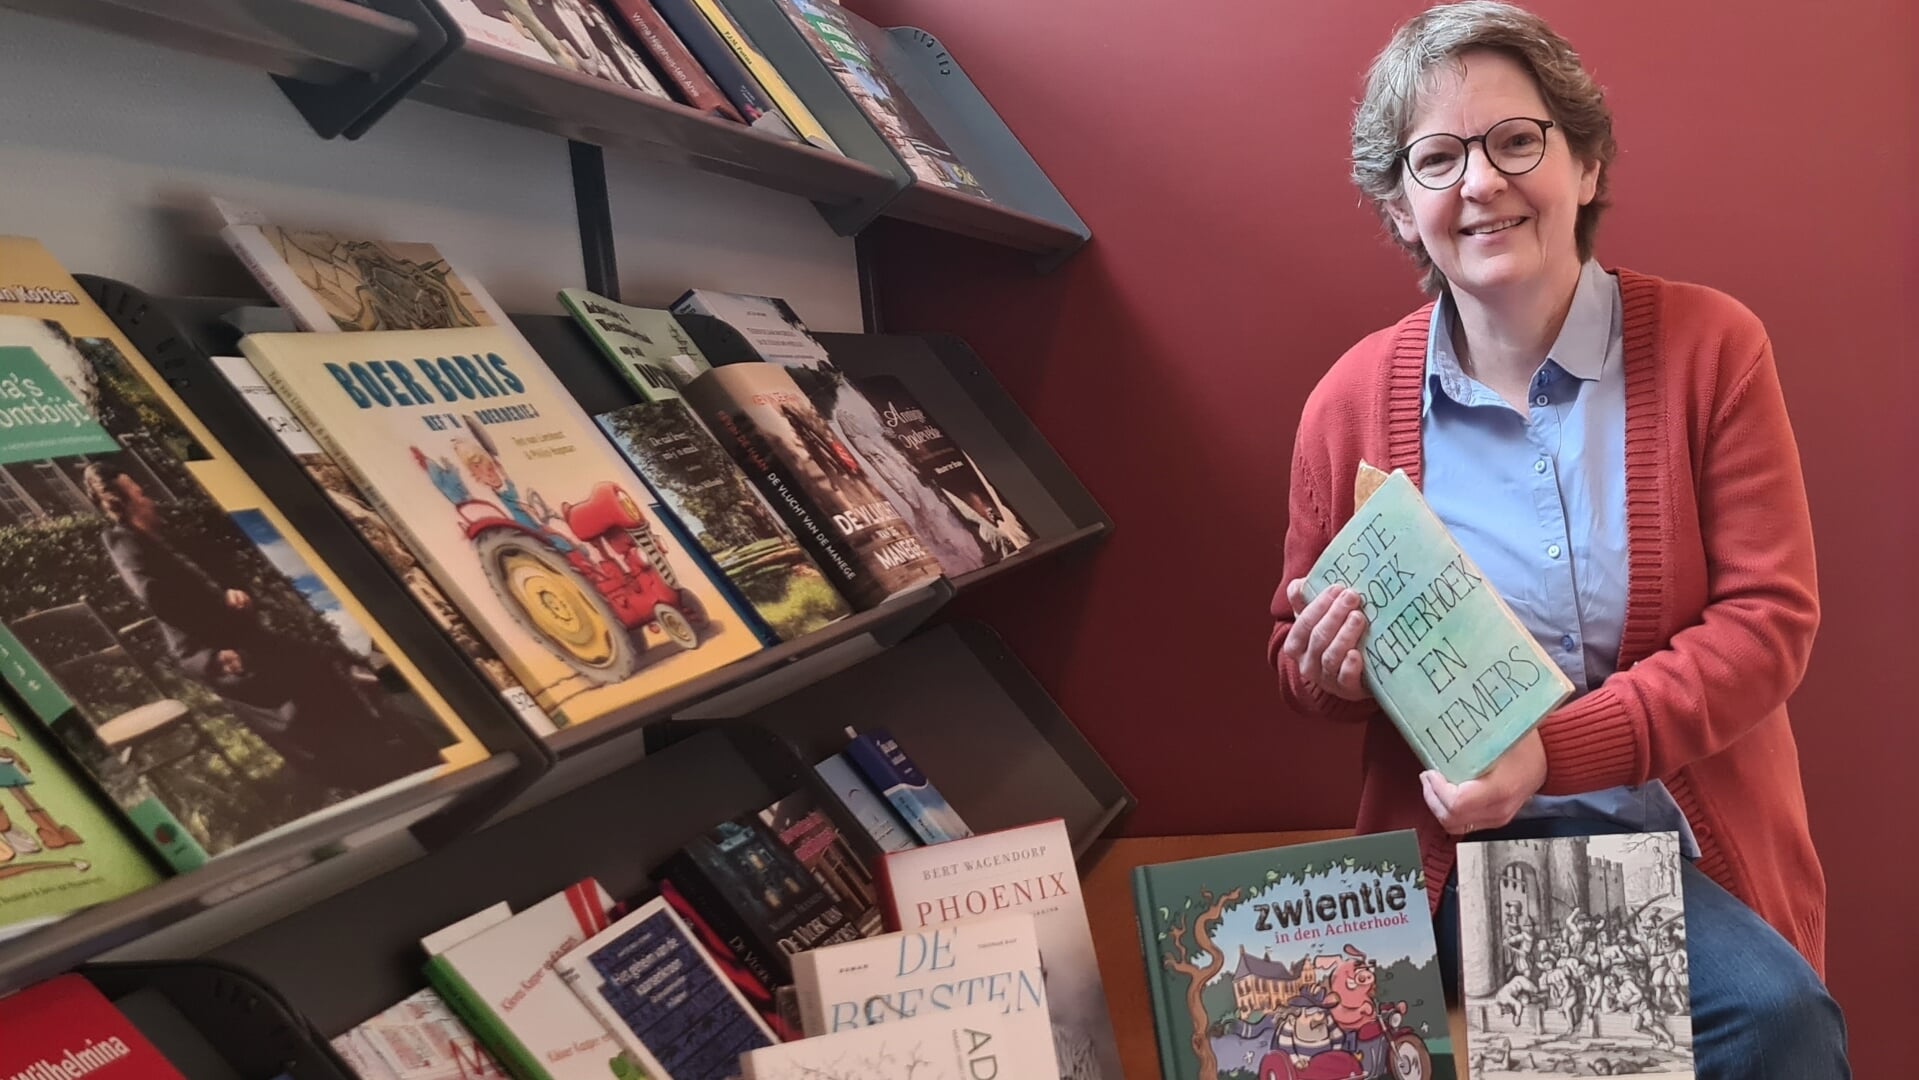 Er komen fantastische boeken uit in en onze streek' | Het laatste nieuws uit Zutphen en Warnsveld